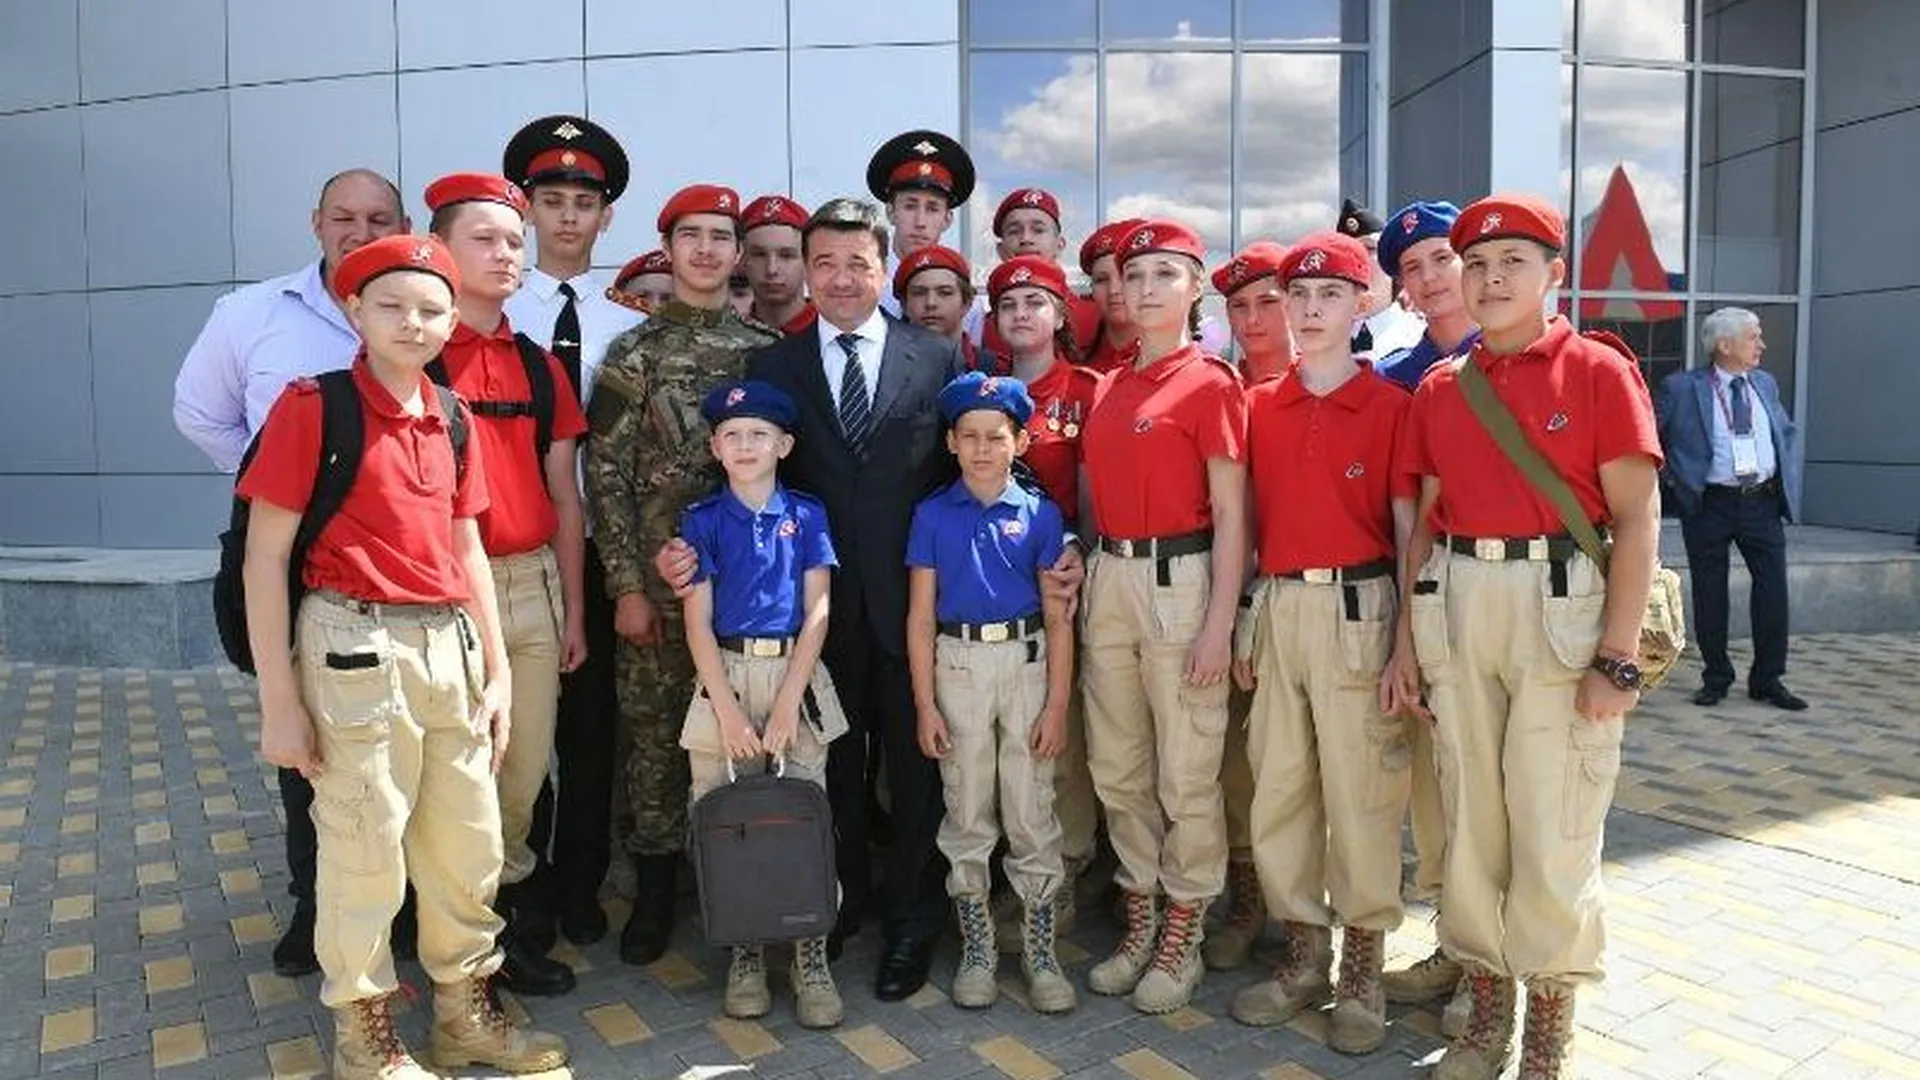 Неравнодушные люди. Губернатор встретился с юными патриотами на форуме «Армия-2019»